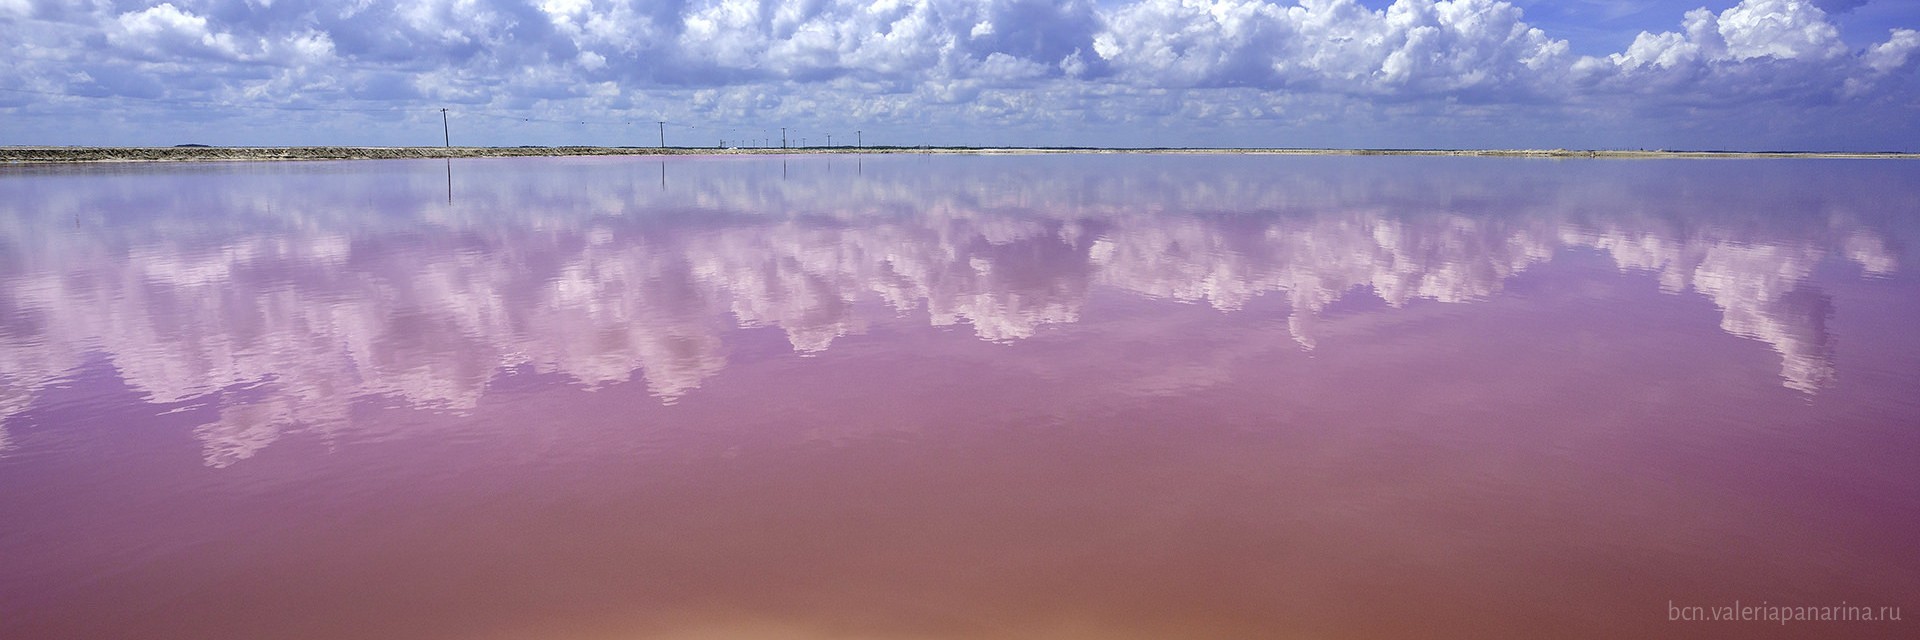 Уникальный природный СПА-комплекс Розового озера